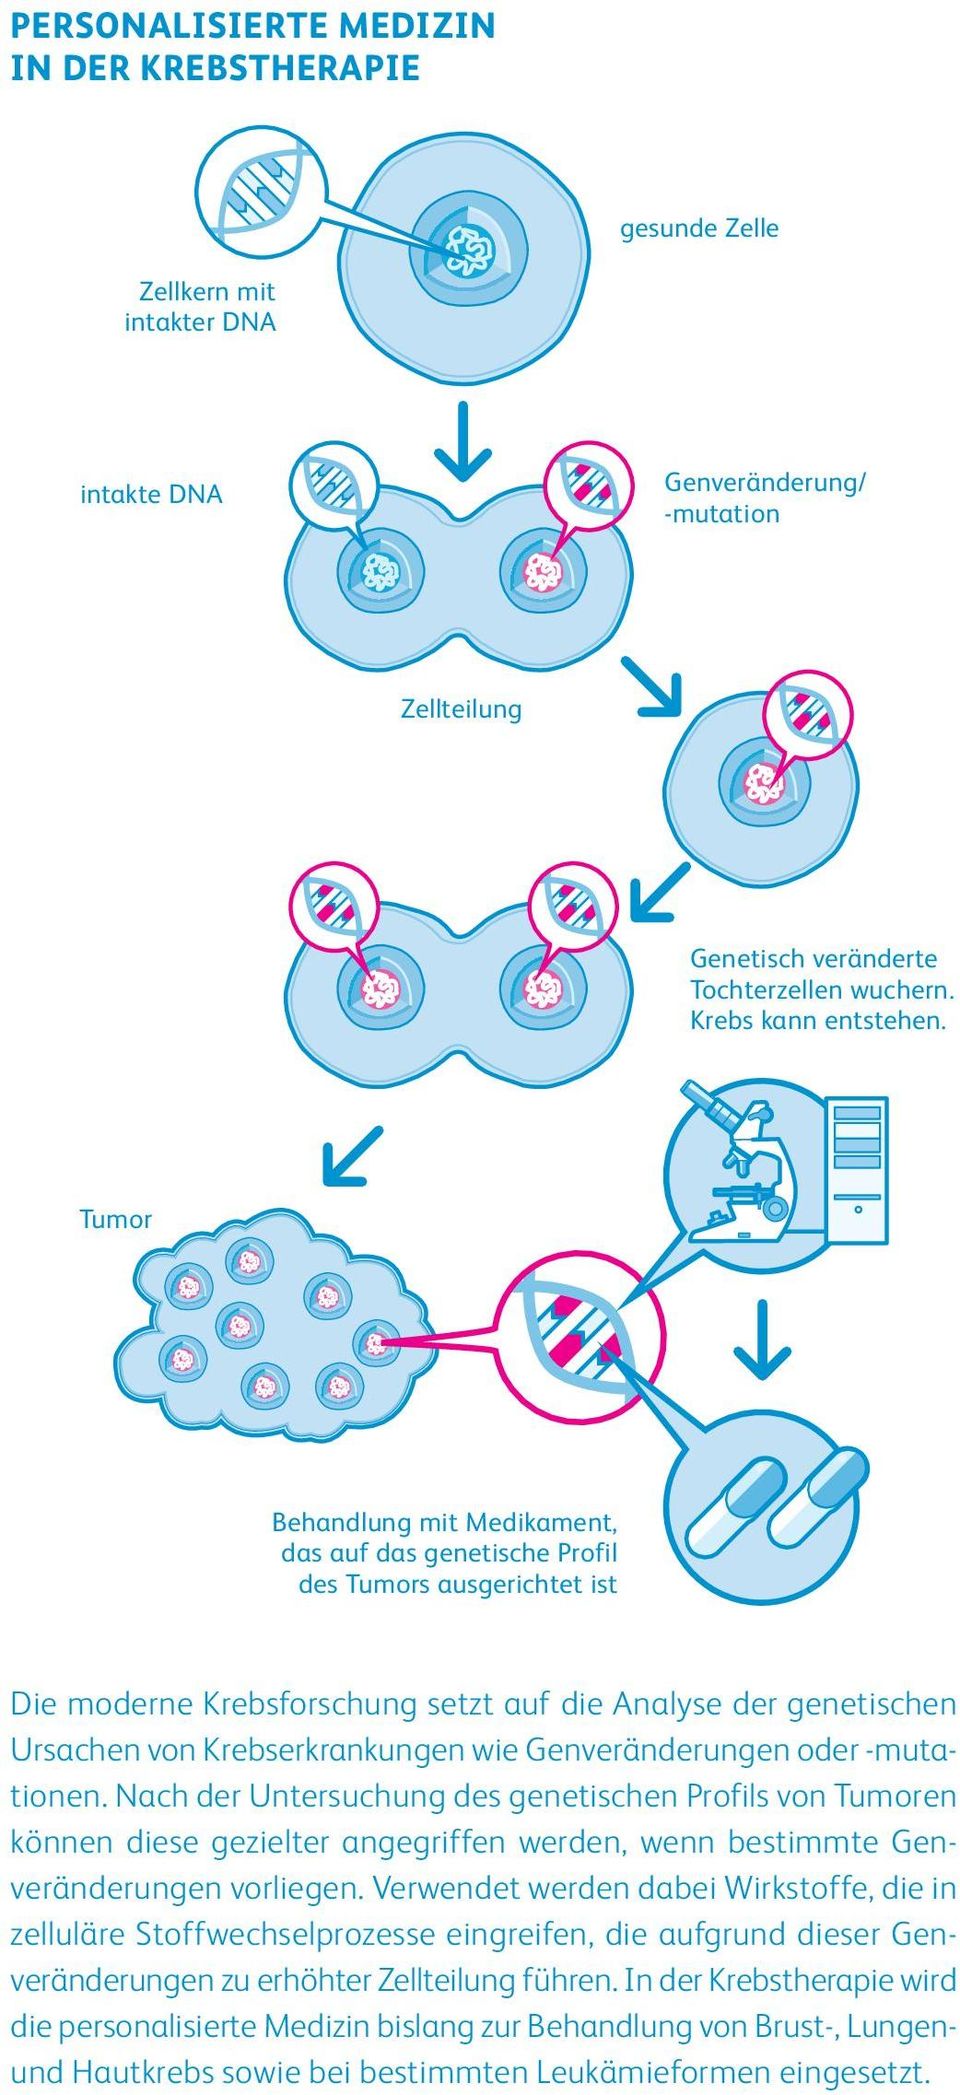 Genveränderungen oder -muta - tionen. Nach der Untersuchung des genetischen Profils von Tumoren können diese gezielter angegriffen werden, wenn bestimmte Gen - veränderungen vorliegen.